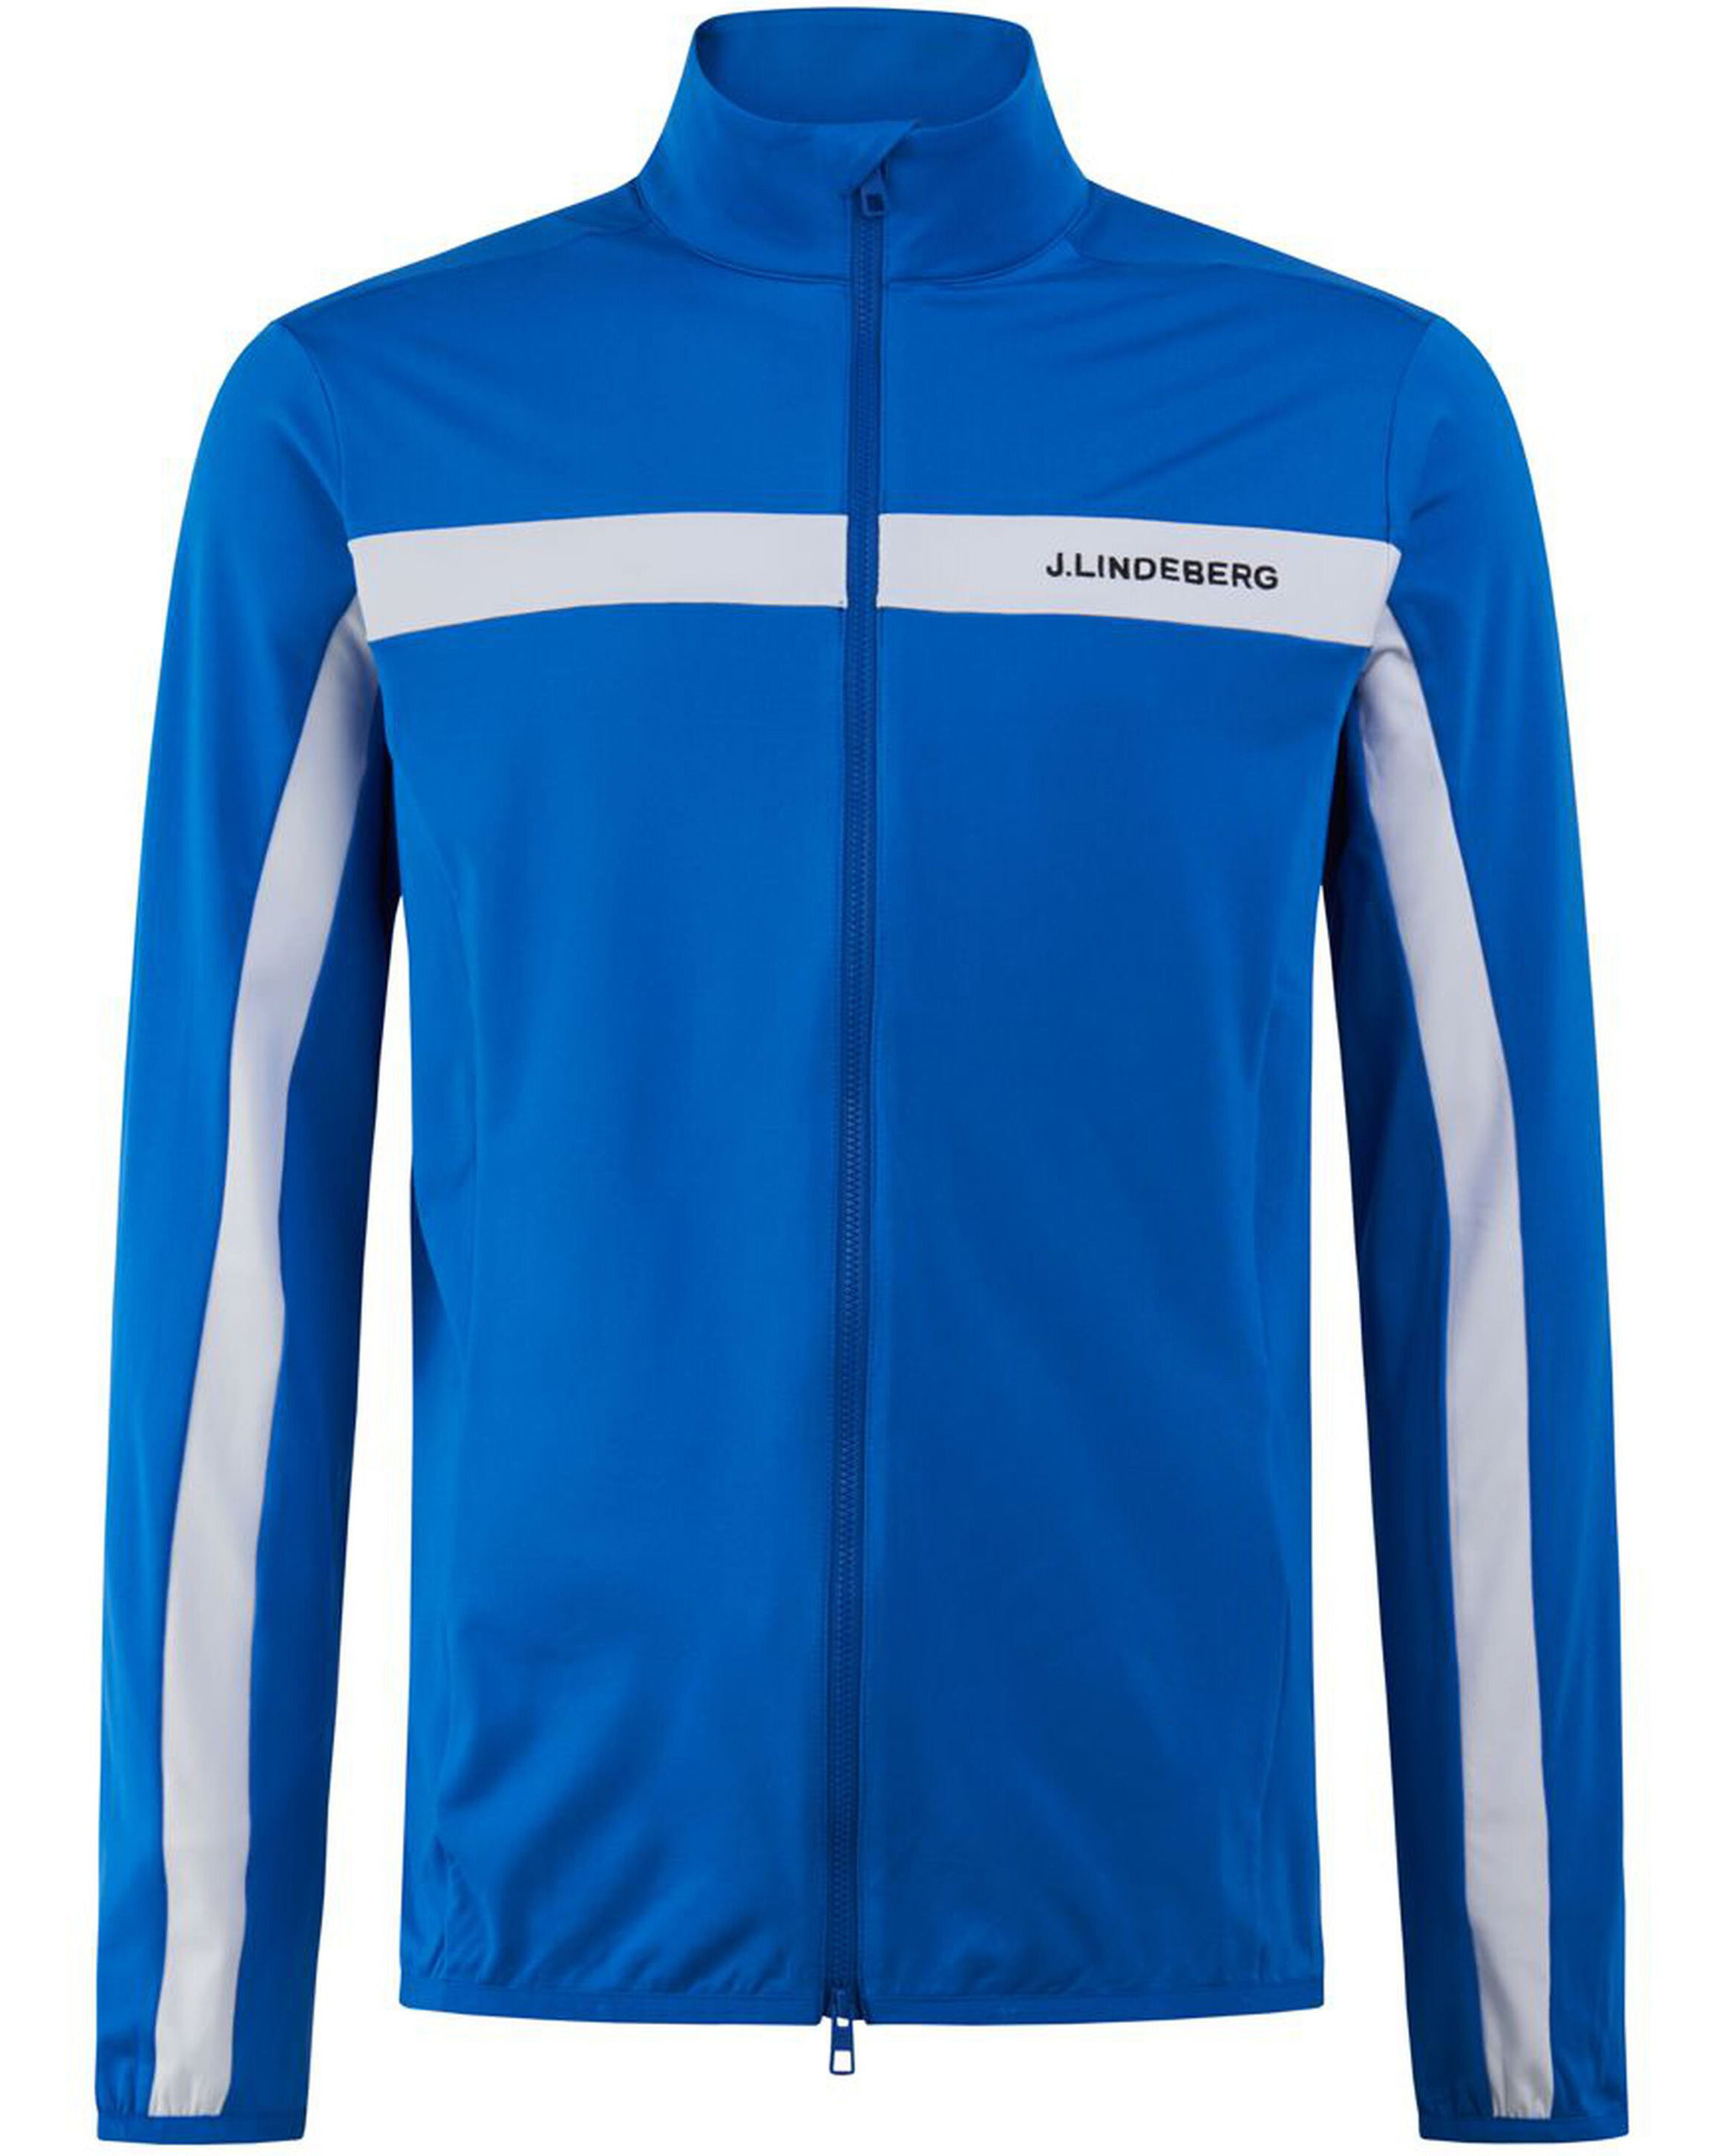 Mid Jacket Jarvis - Leichte Midlayer J.Lindeberg Gardena kaufen Online Jacken bei Sport Layer & -